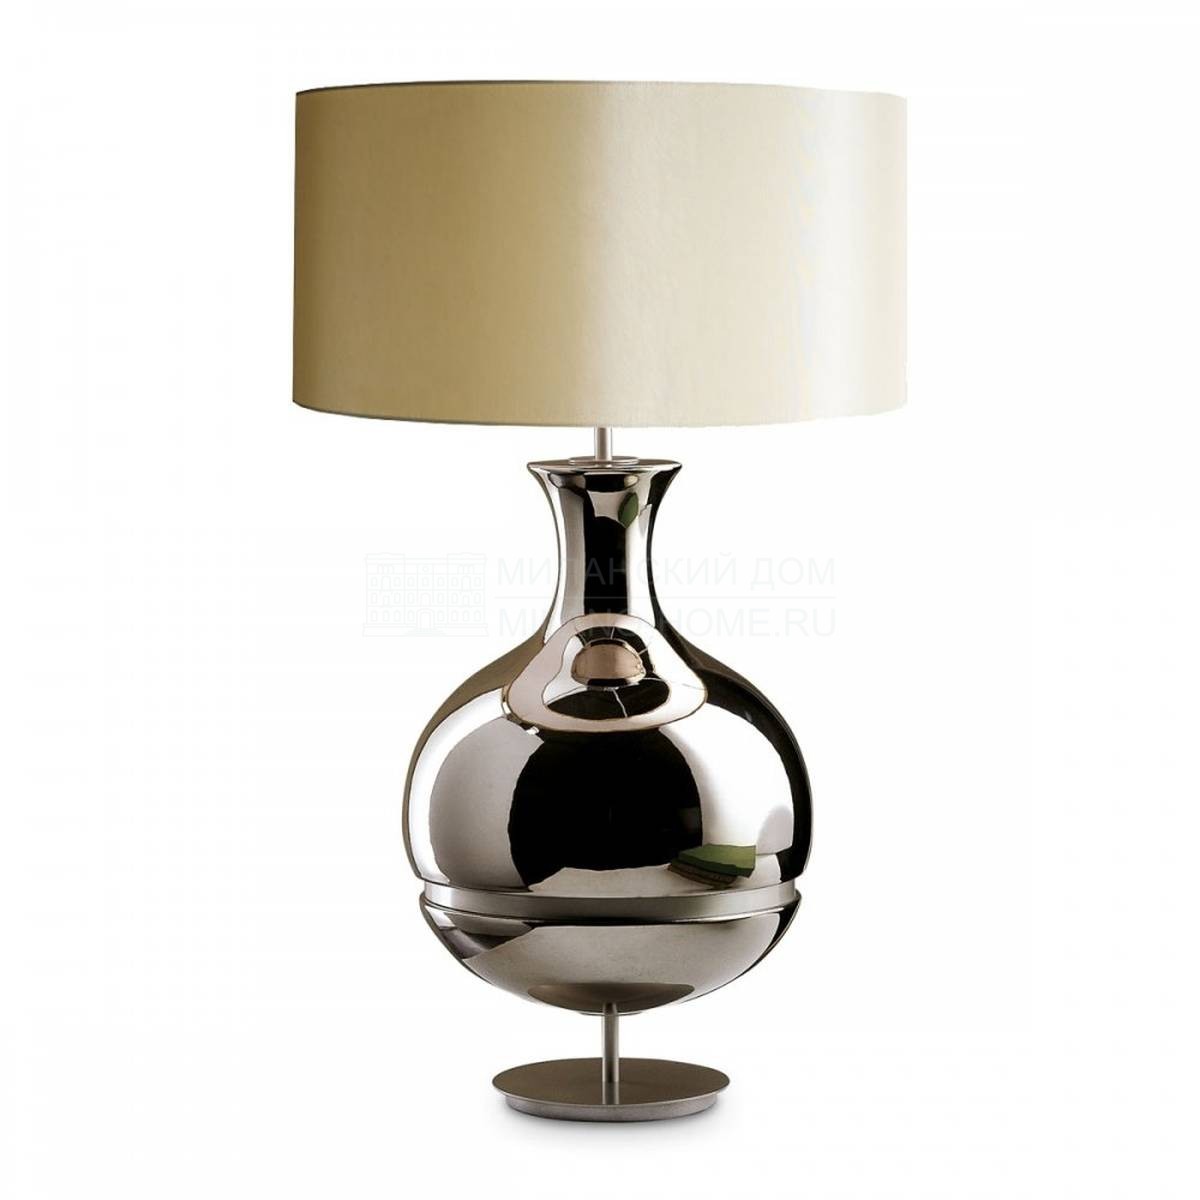 Настольная лампа Duna table lamp из Италии фабрики MARIONI